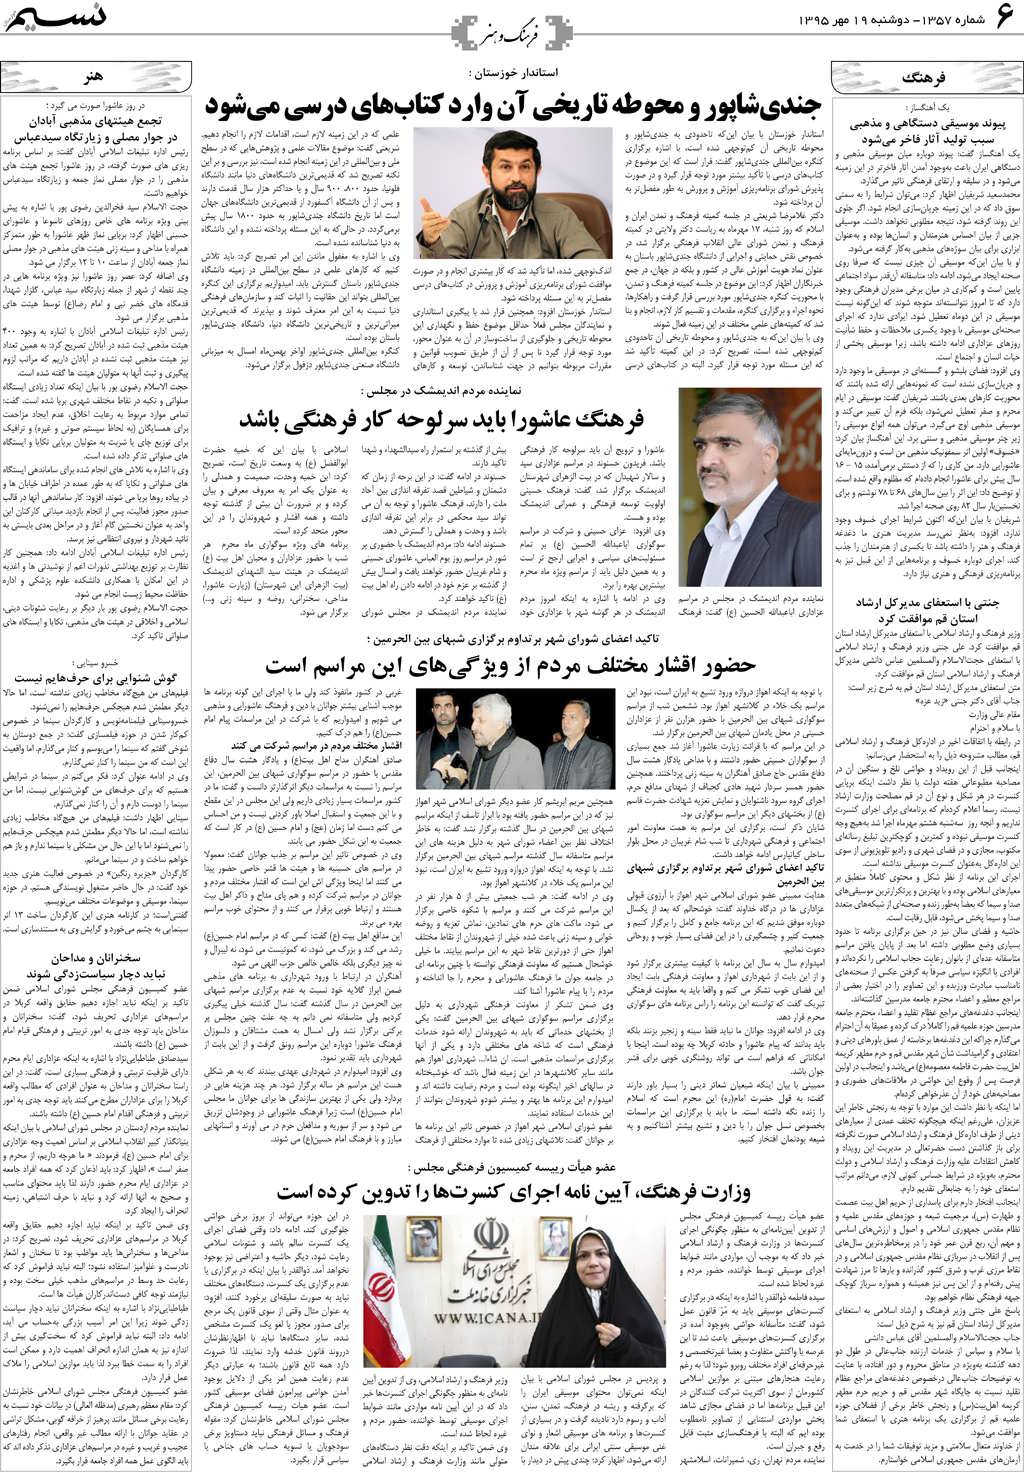 صفحه فرهنگ و هنر روزنامه نسیم شماره 1357